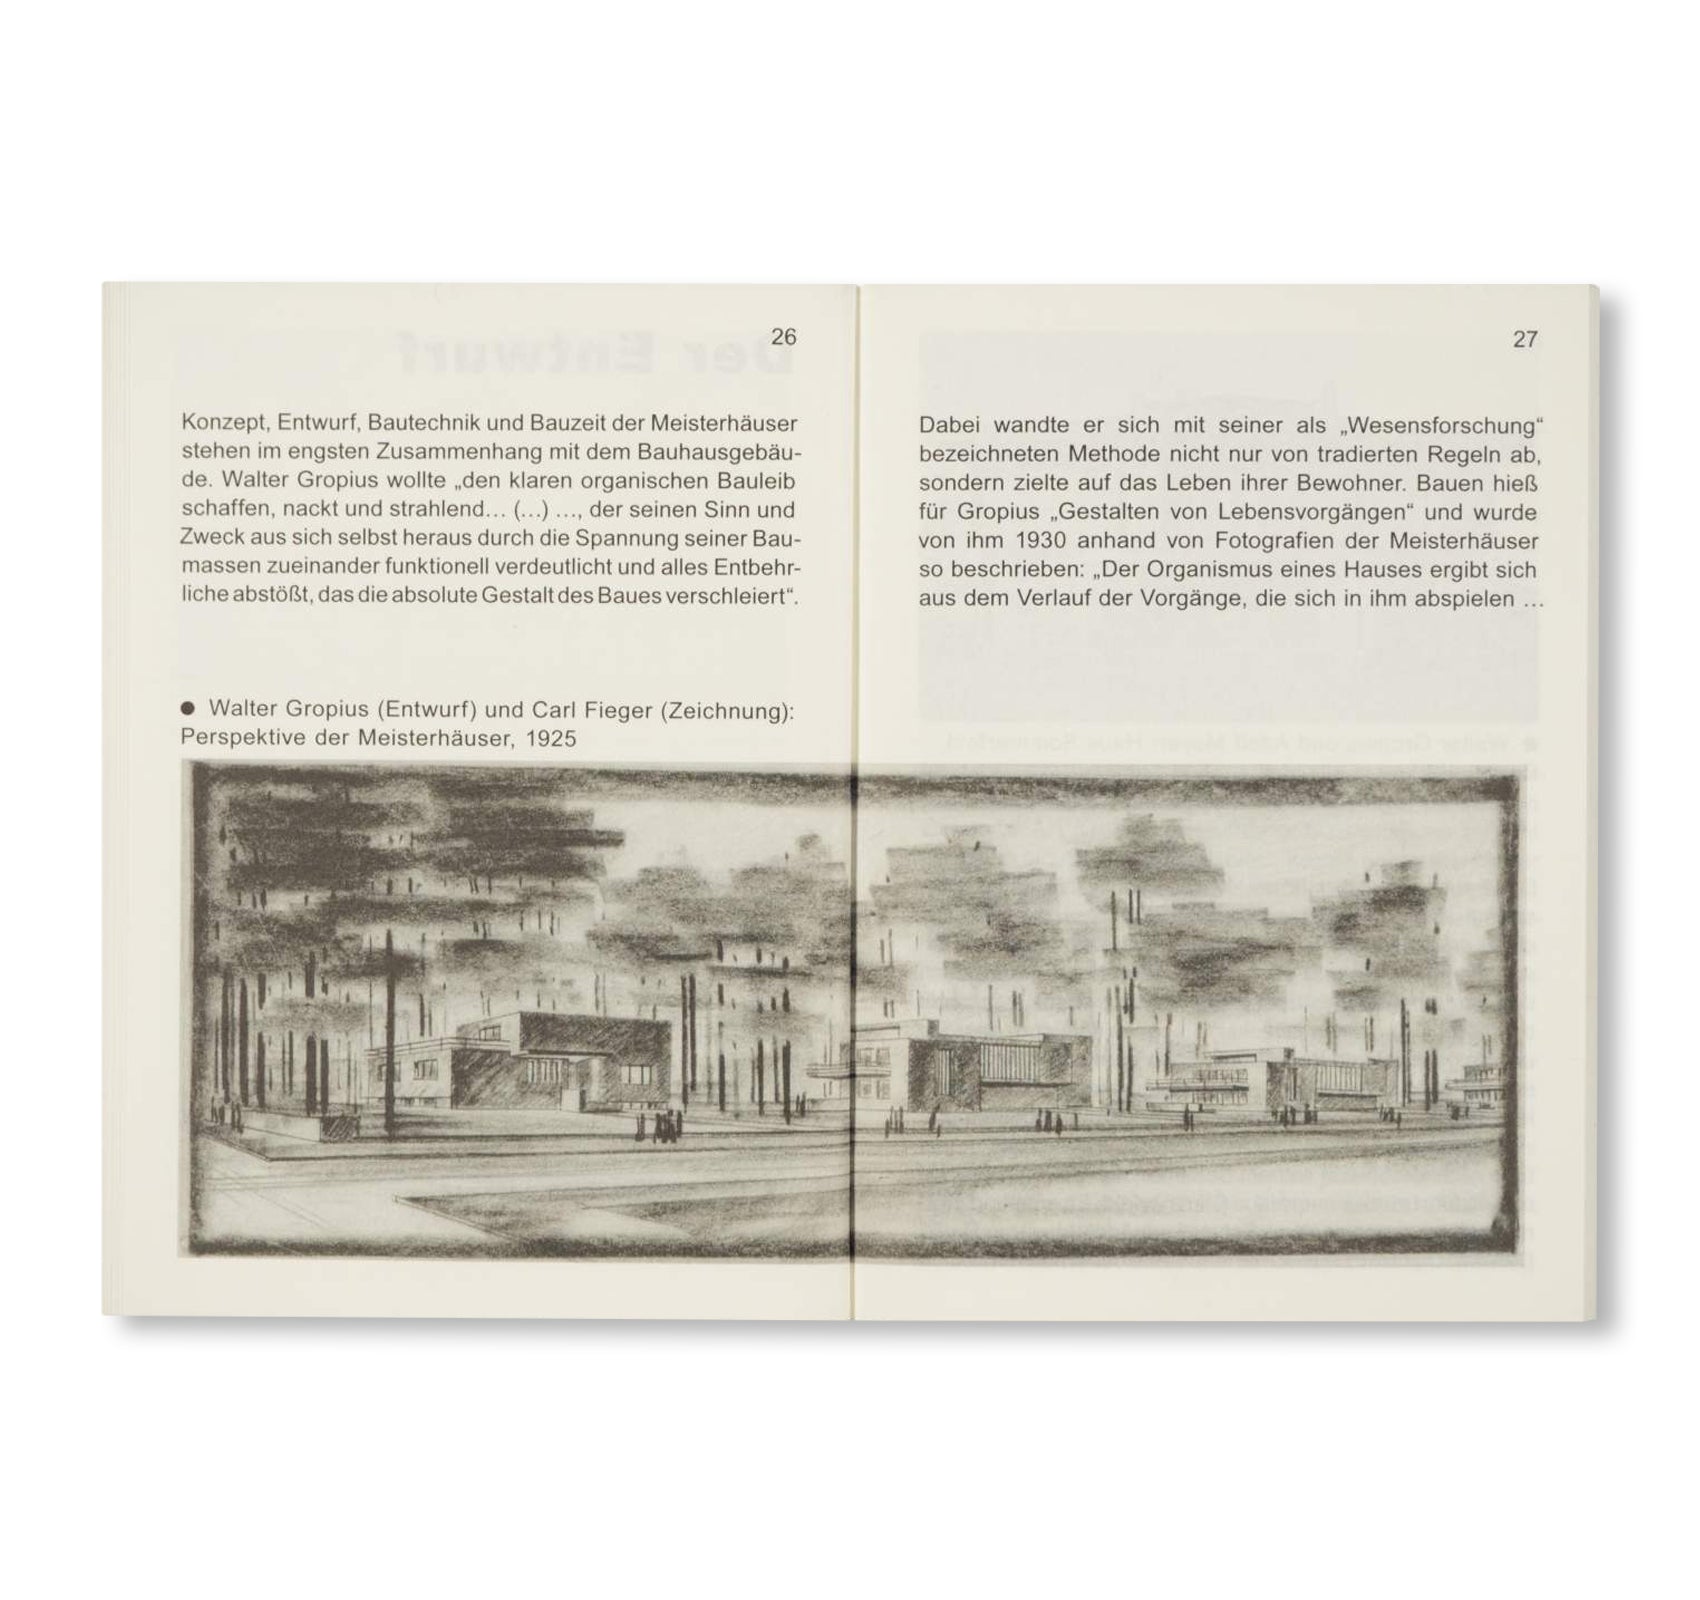 DIE MEISTERHÄUSER IN DESSAU / Bauhaus Paperback 10 by Stiftung Bauhaus Dessau [GERMAN EDITION]